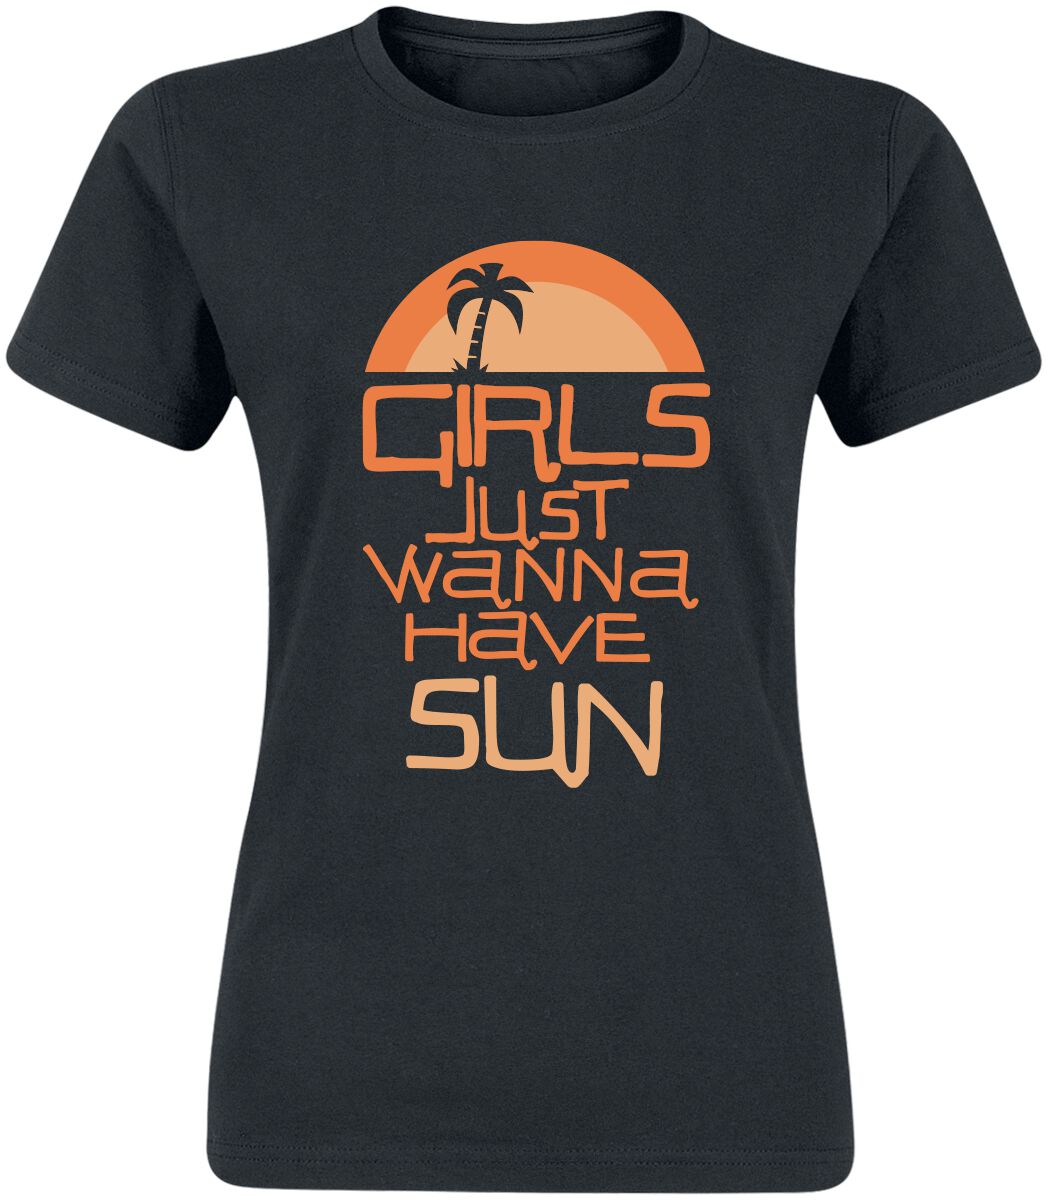 T-Shirt Manches courtes Fun de Slogans - Girls Just Wanna Have Sun - S à 3XL - pour Femme - noir